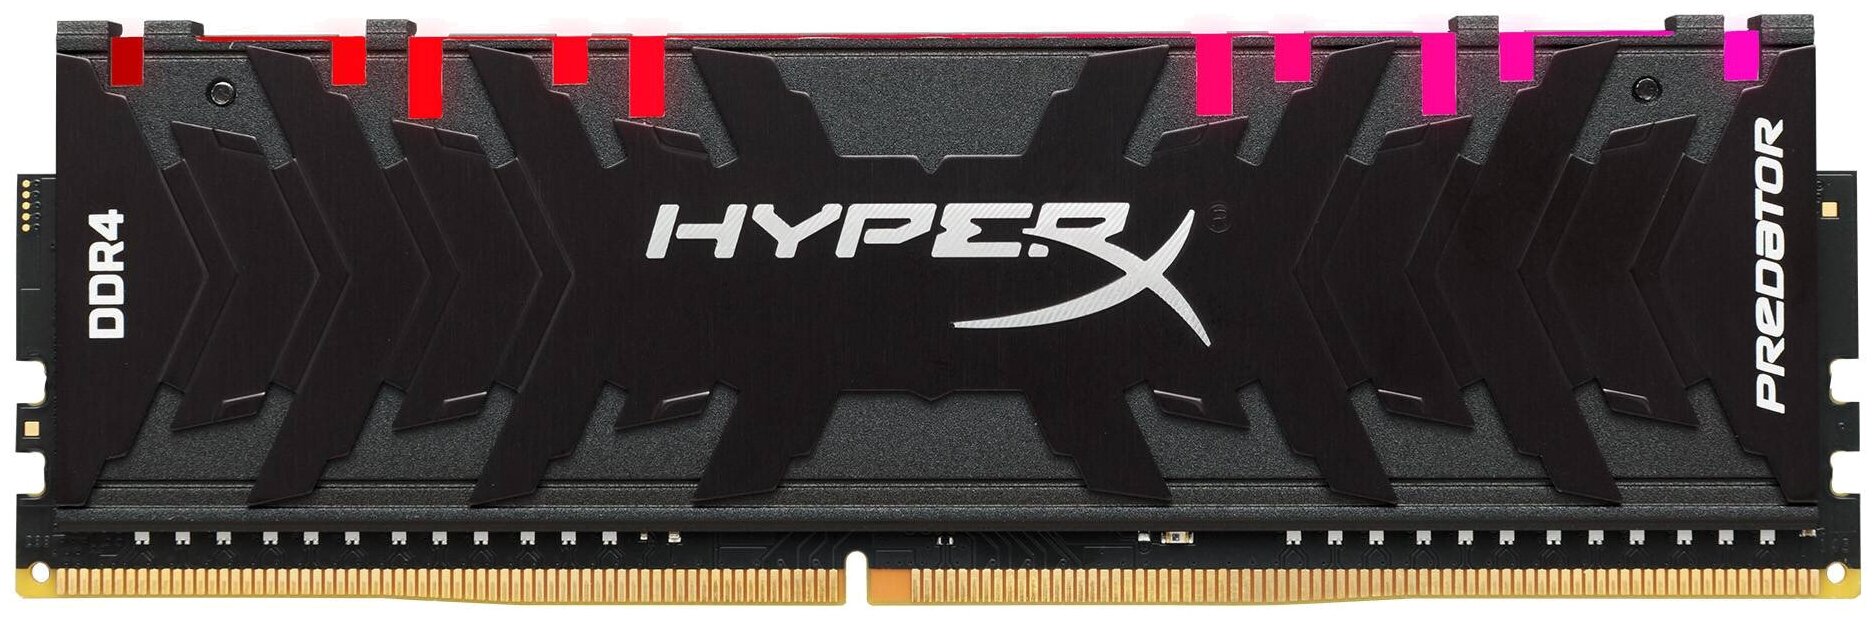 Оперативная память HyperX Predator RGB 8 ГБ DDR4 2933 МГц DIMM CL15 HX429C15PB3A/8